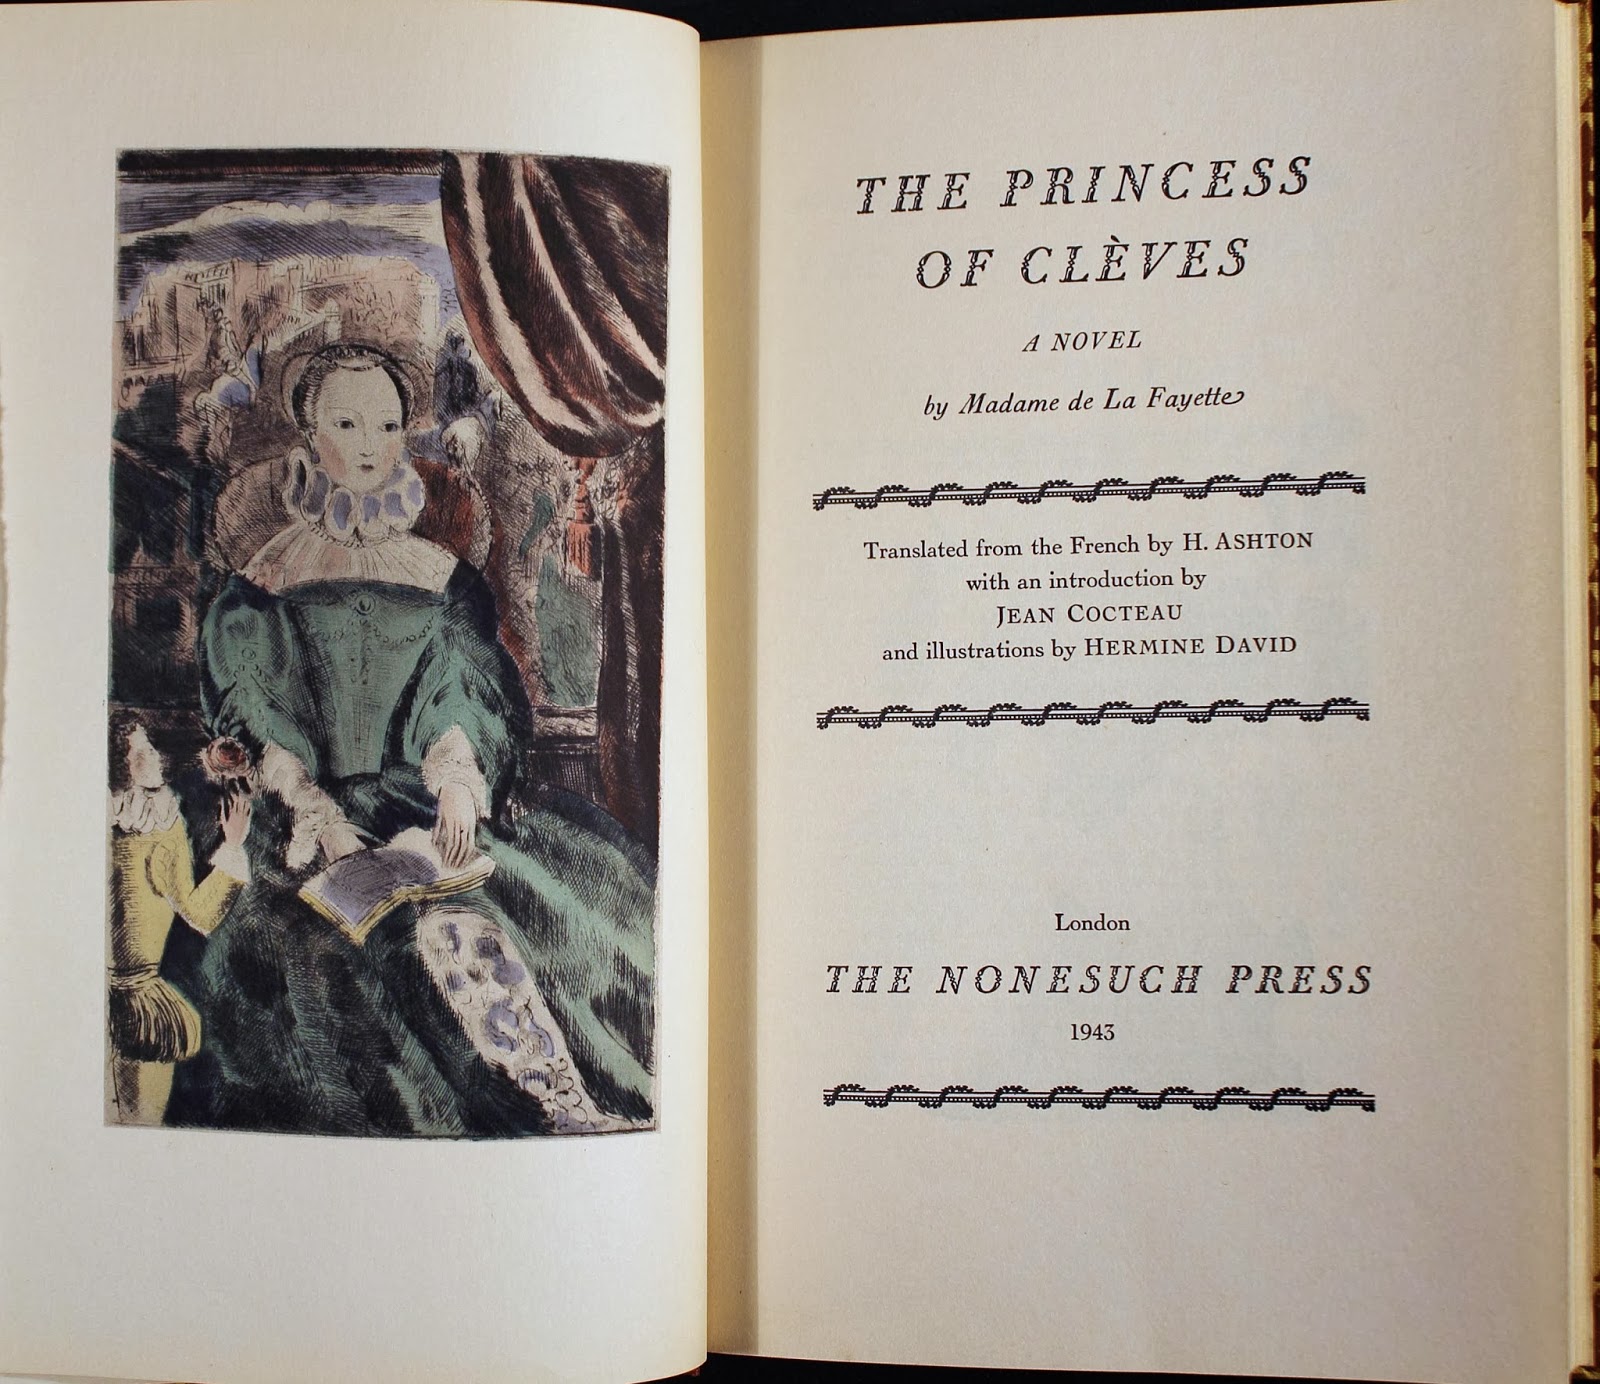 La Princesse de Cleves title page and illustration